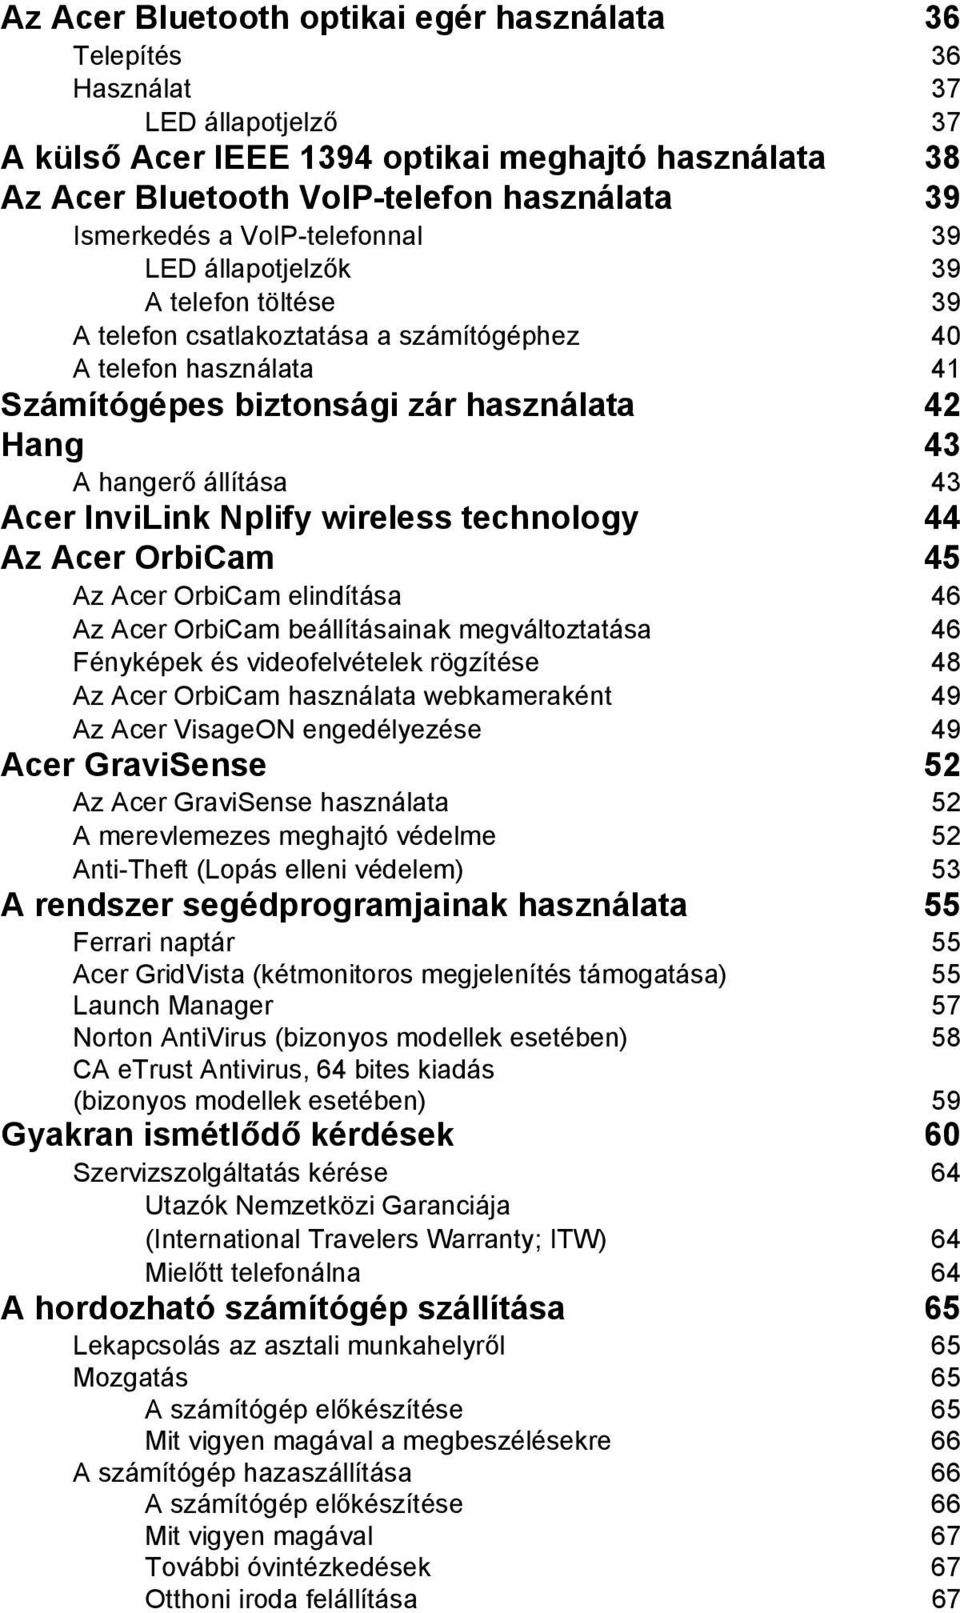 hangerő állítása 43 Acer InviLink Nplify wireless technology 44 Az Acer OrbiCam 45 Az Acer OrbiCam elindítása 46 Az Acer OrbiCam beállításainak megváltoztatása 46 Fényképek és videofelvételek